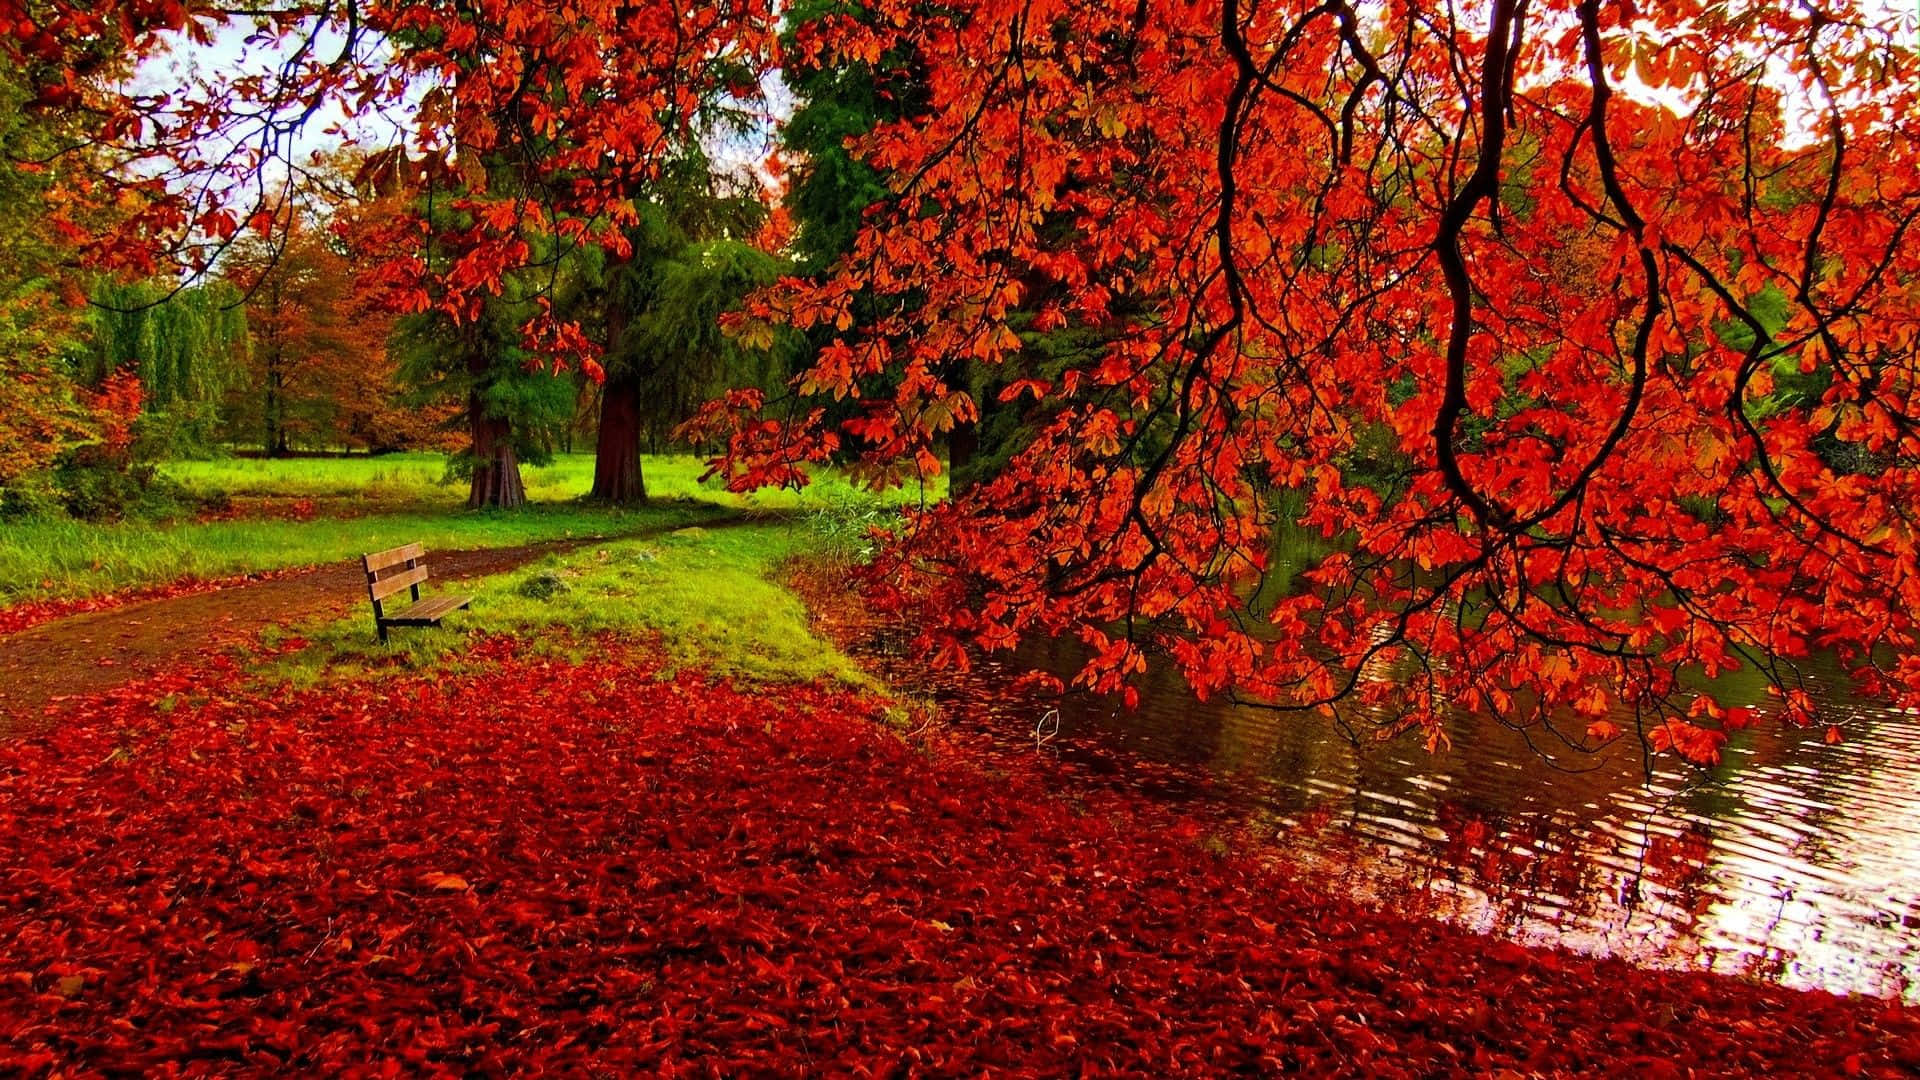 Èarrivato Il Momento Di Esplorare La Vibrante Bellezza Dei Colori Dell'autunno. Sfondo